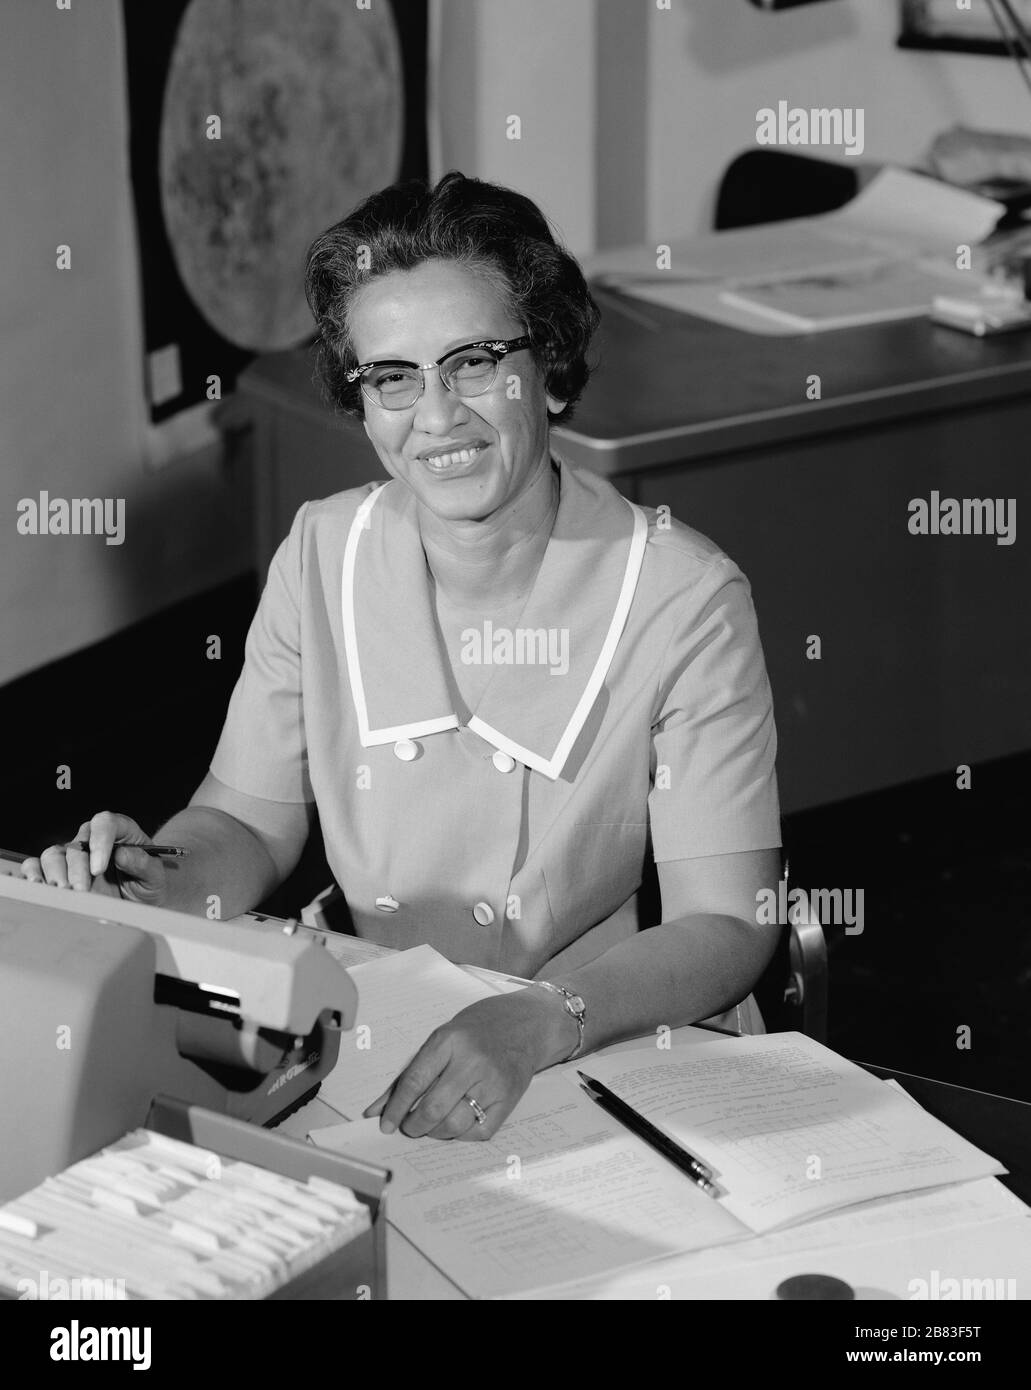 Portrait de Katherine Johnson, pionnière en informatique humaine de la NASA et en mathématiques afro-américaines (1918-2020), souriant, à un bureau avec notes, 1966. Image de courtoisie NASA. () Banque D'Images